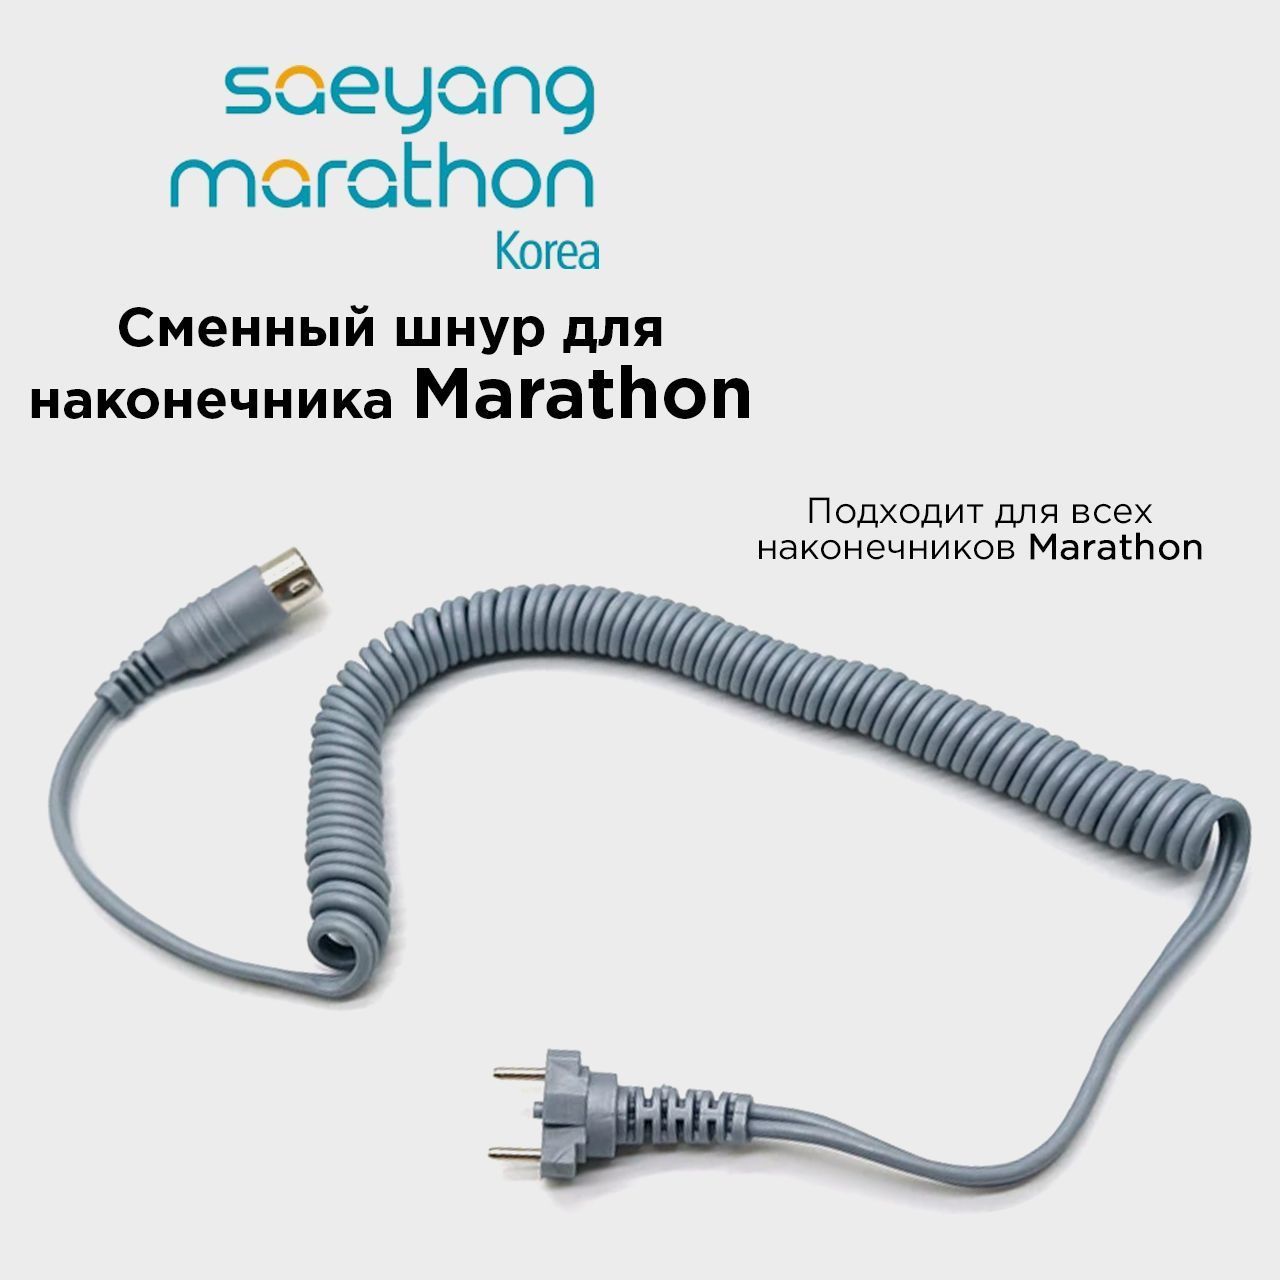 Провод для микромотора Marathon шнур для ручки наконечника Маратон Серый разветвитель прикуривателя 12 24v провод 360 см